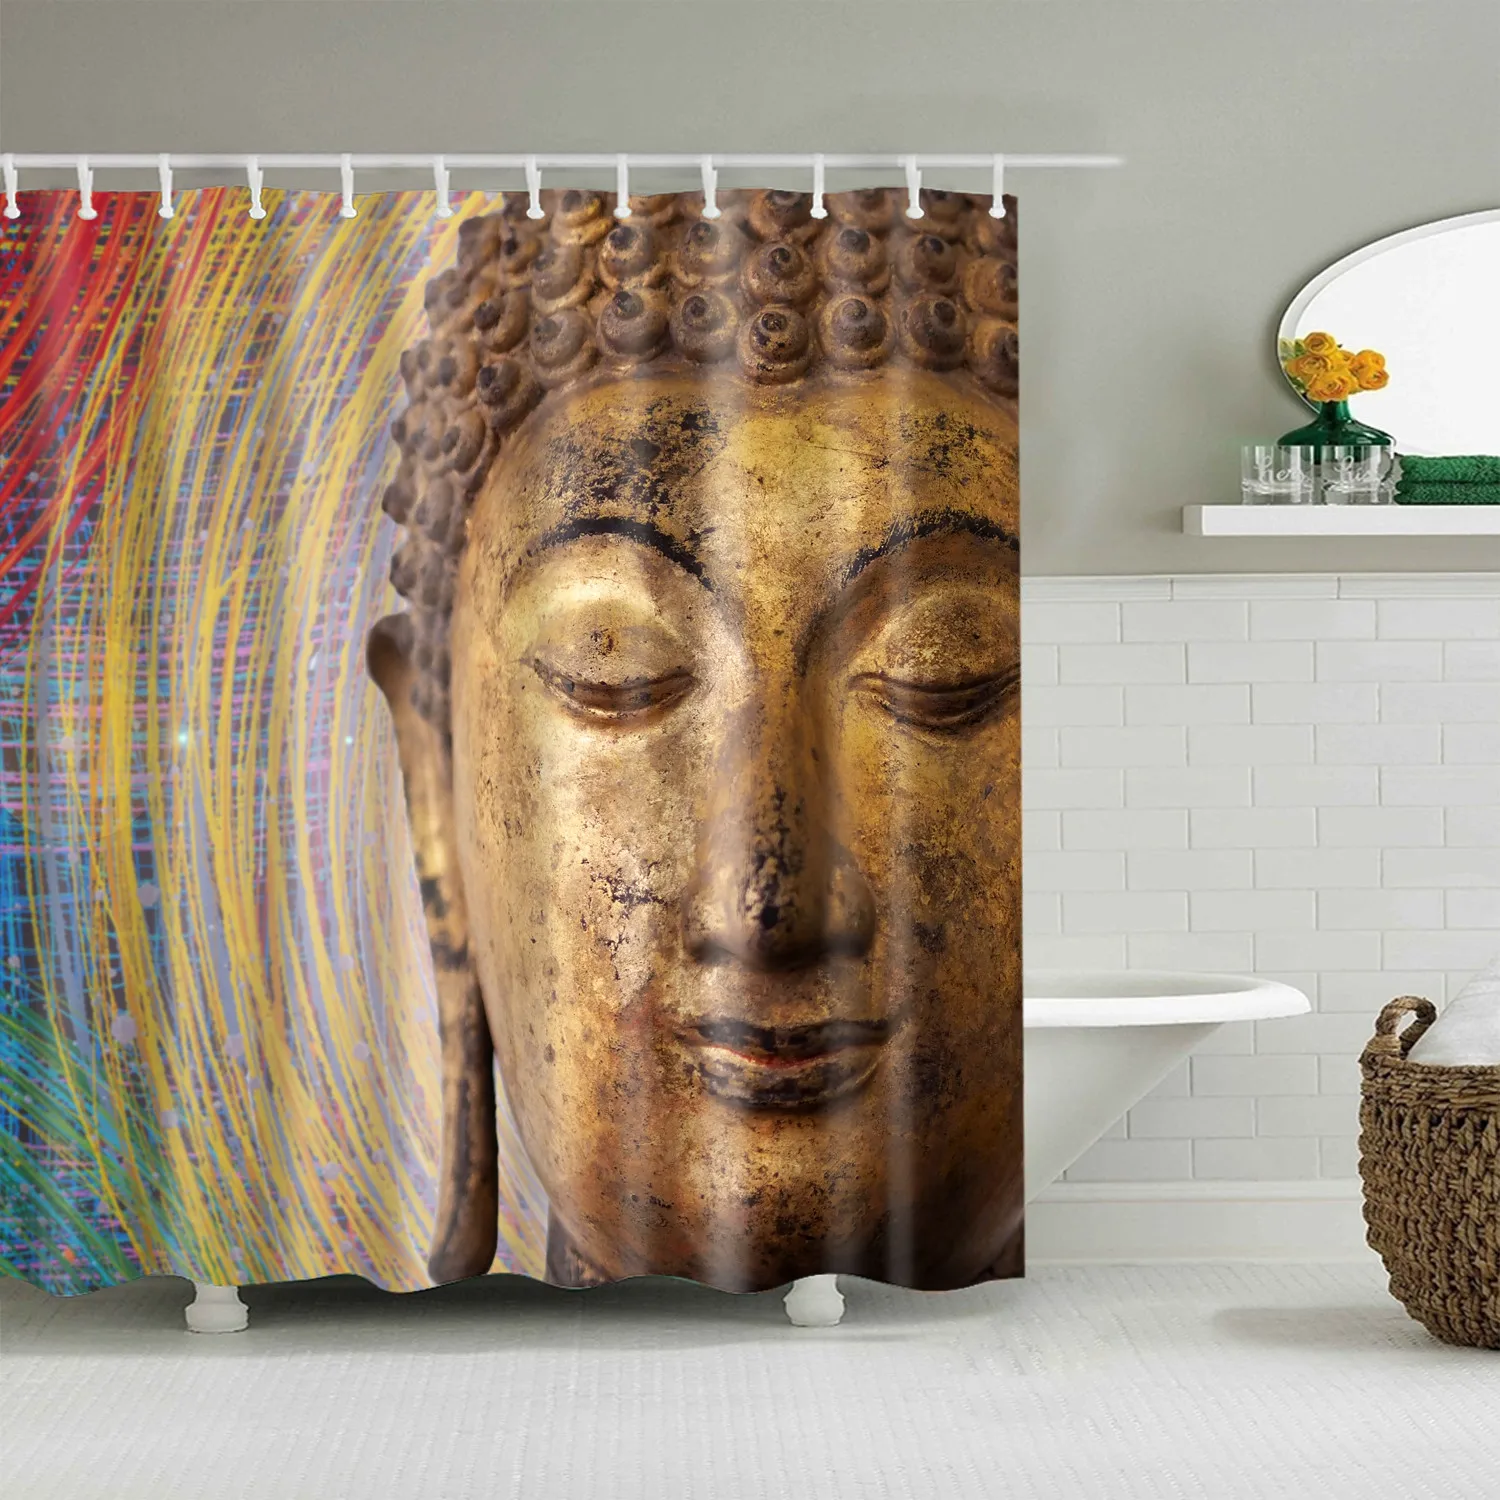 180x200 см индийский Bodhisattva 3D занавеска для ванной Водонепроницаемый полиэстер ткань затемненная Мандала занавеска для душа для ванной комнаты cortina - Цвет: D0353